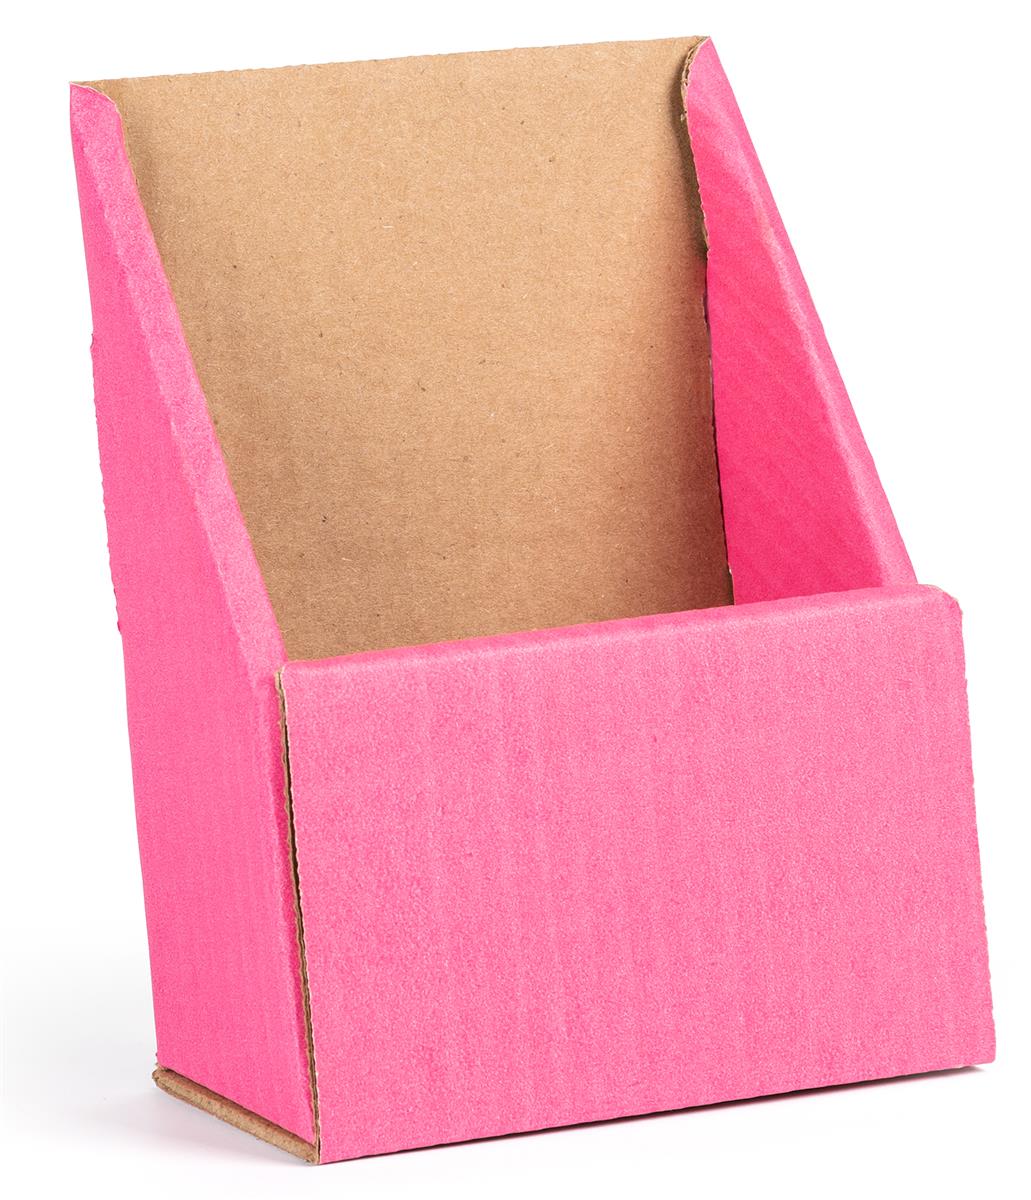 Pink cardboard brochure holders